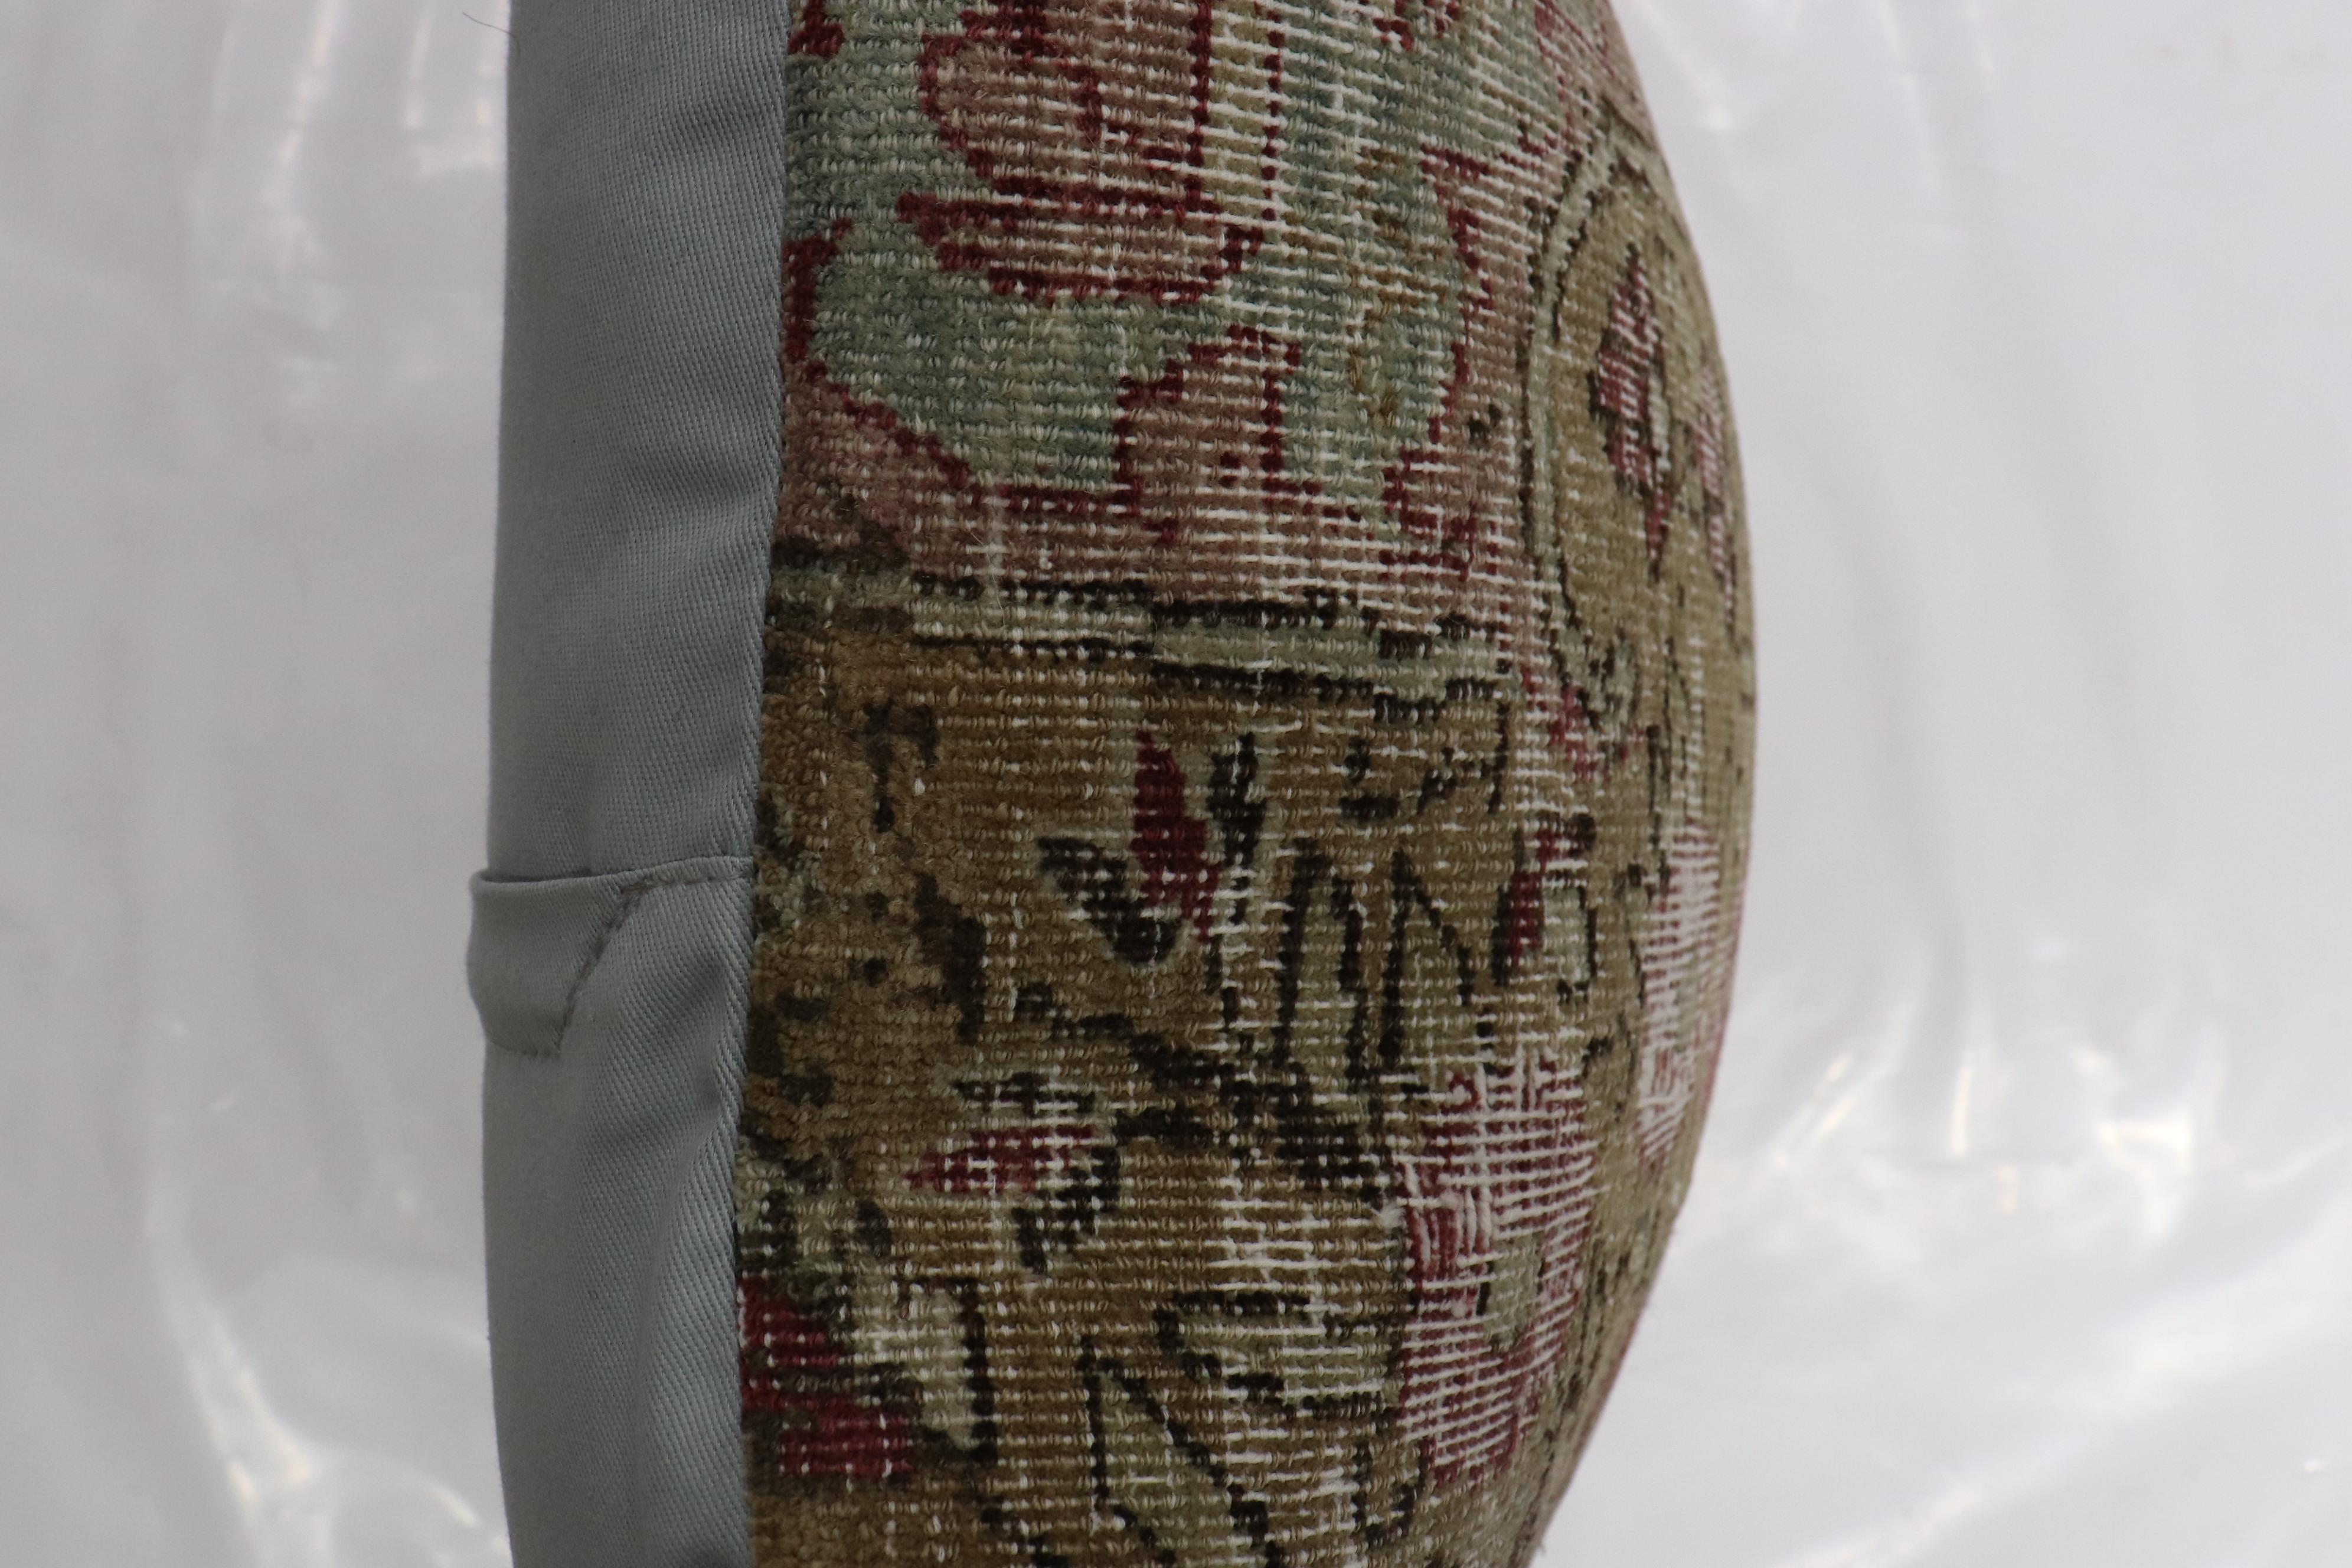 Kissen aus einem abgenutzten persischen Kerman-Teppich aus dem 19. Jahrhundert. Füllungseinsatz und Reißverschluss vorhanden

Maße: 16